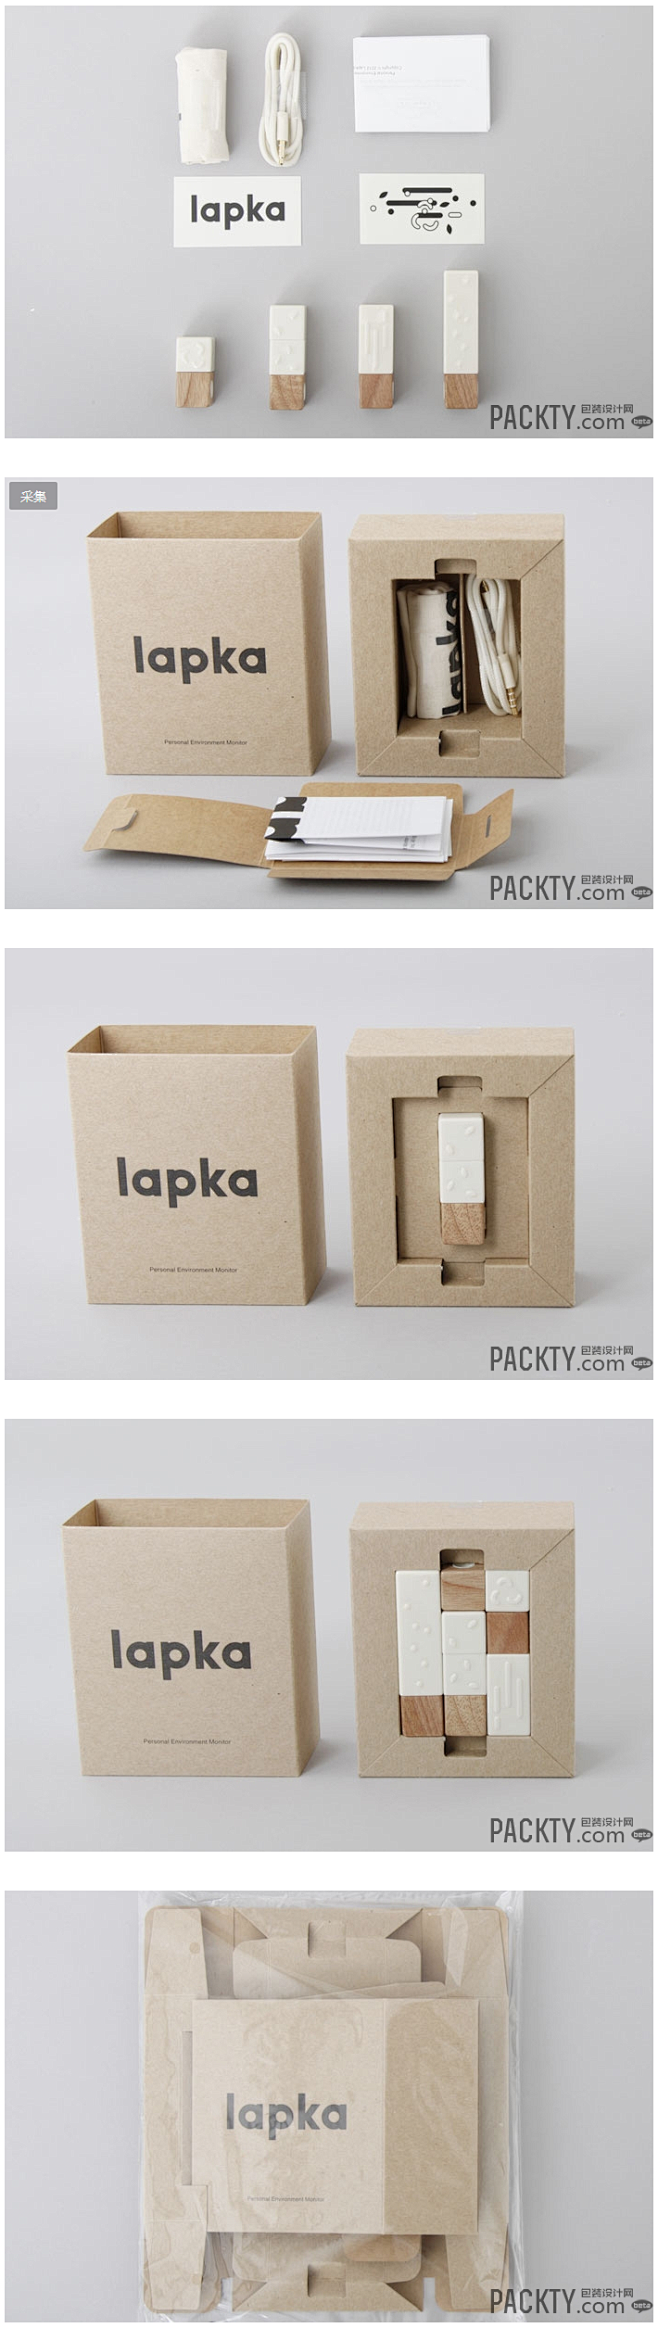 lapka包装结构设计 - 其他 - 包...